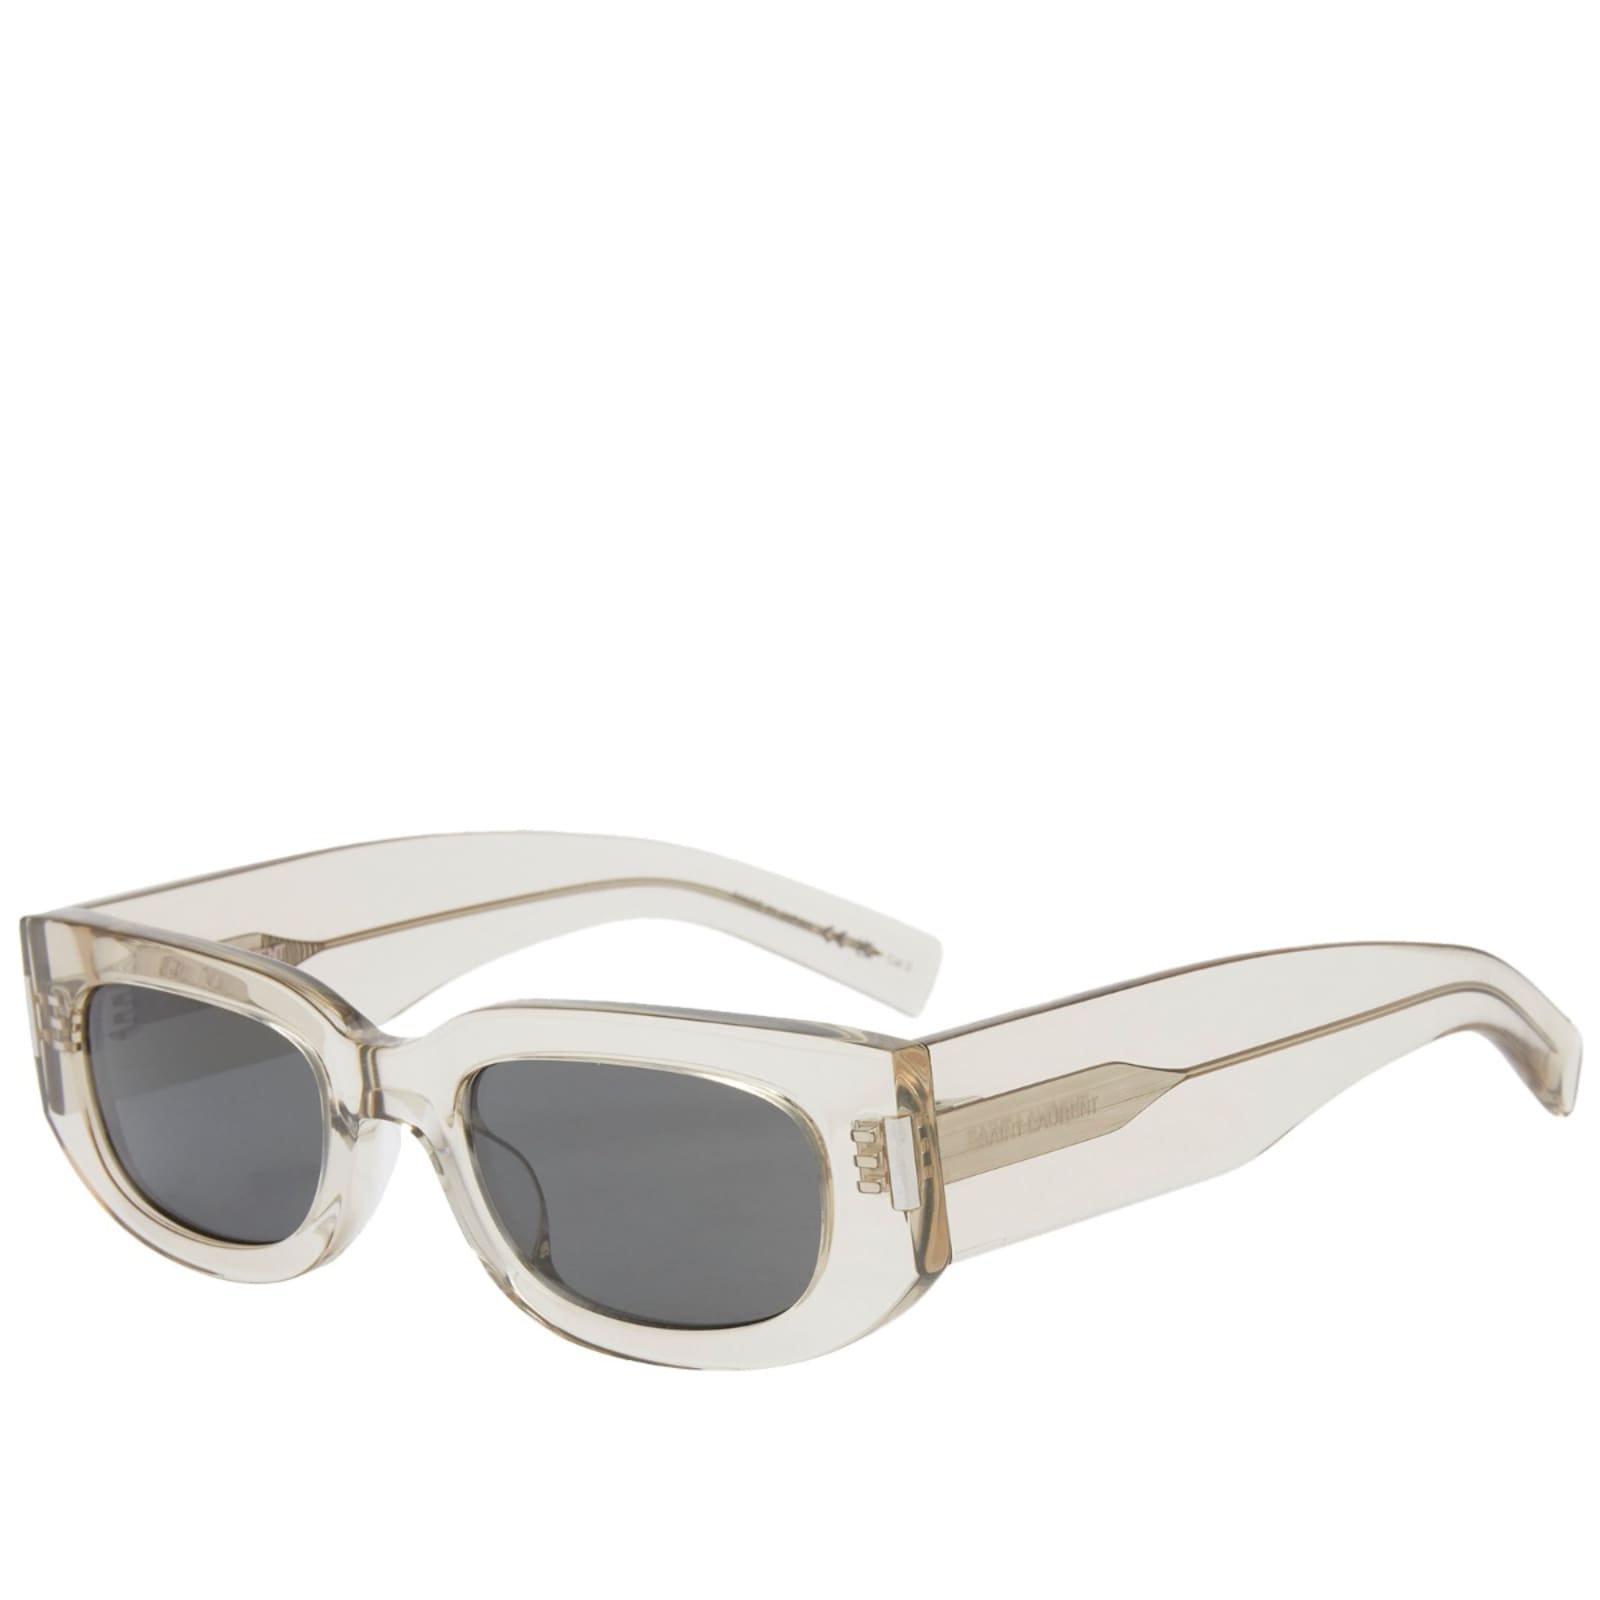 Солнцезащитные очки Saint Laurent Sl 697, бежевый и серый солнцезащитные очки saint laurent sl309m 005 серый